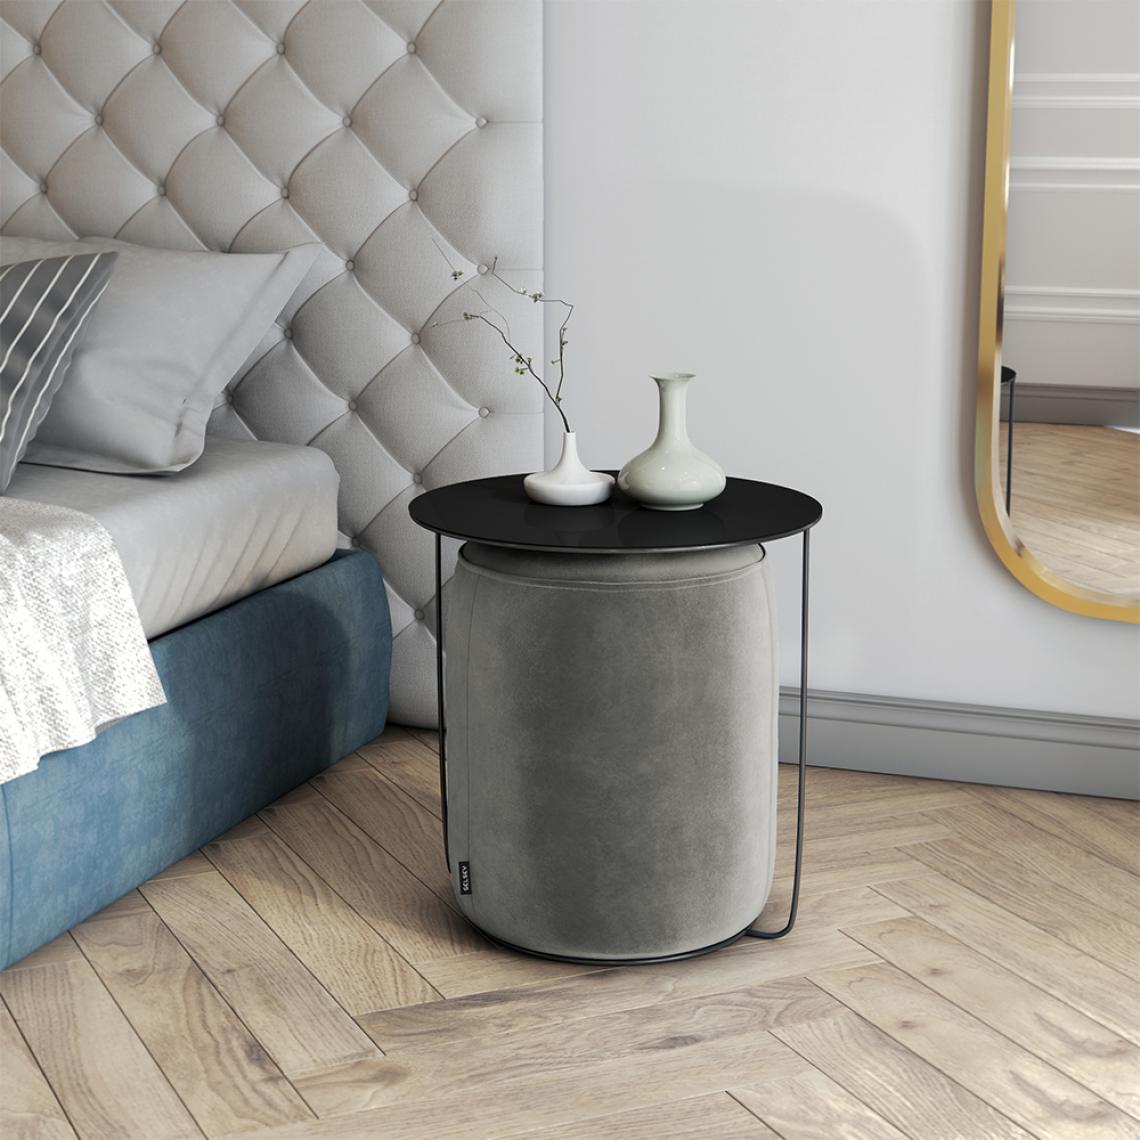 Selsey - Bout de canapé - GAZURE - gris - en métal - avec pouf - moderne - Tables basses